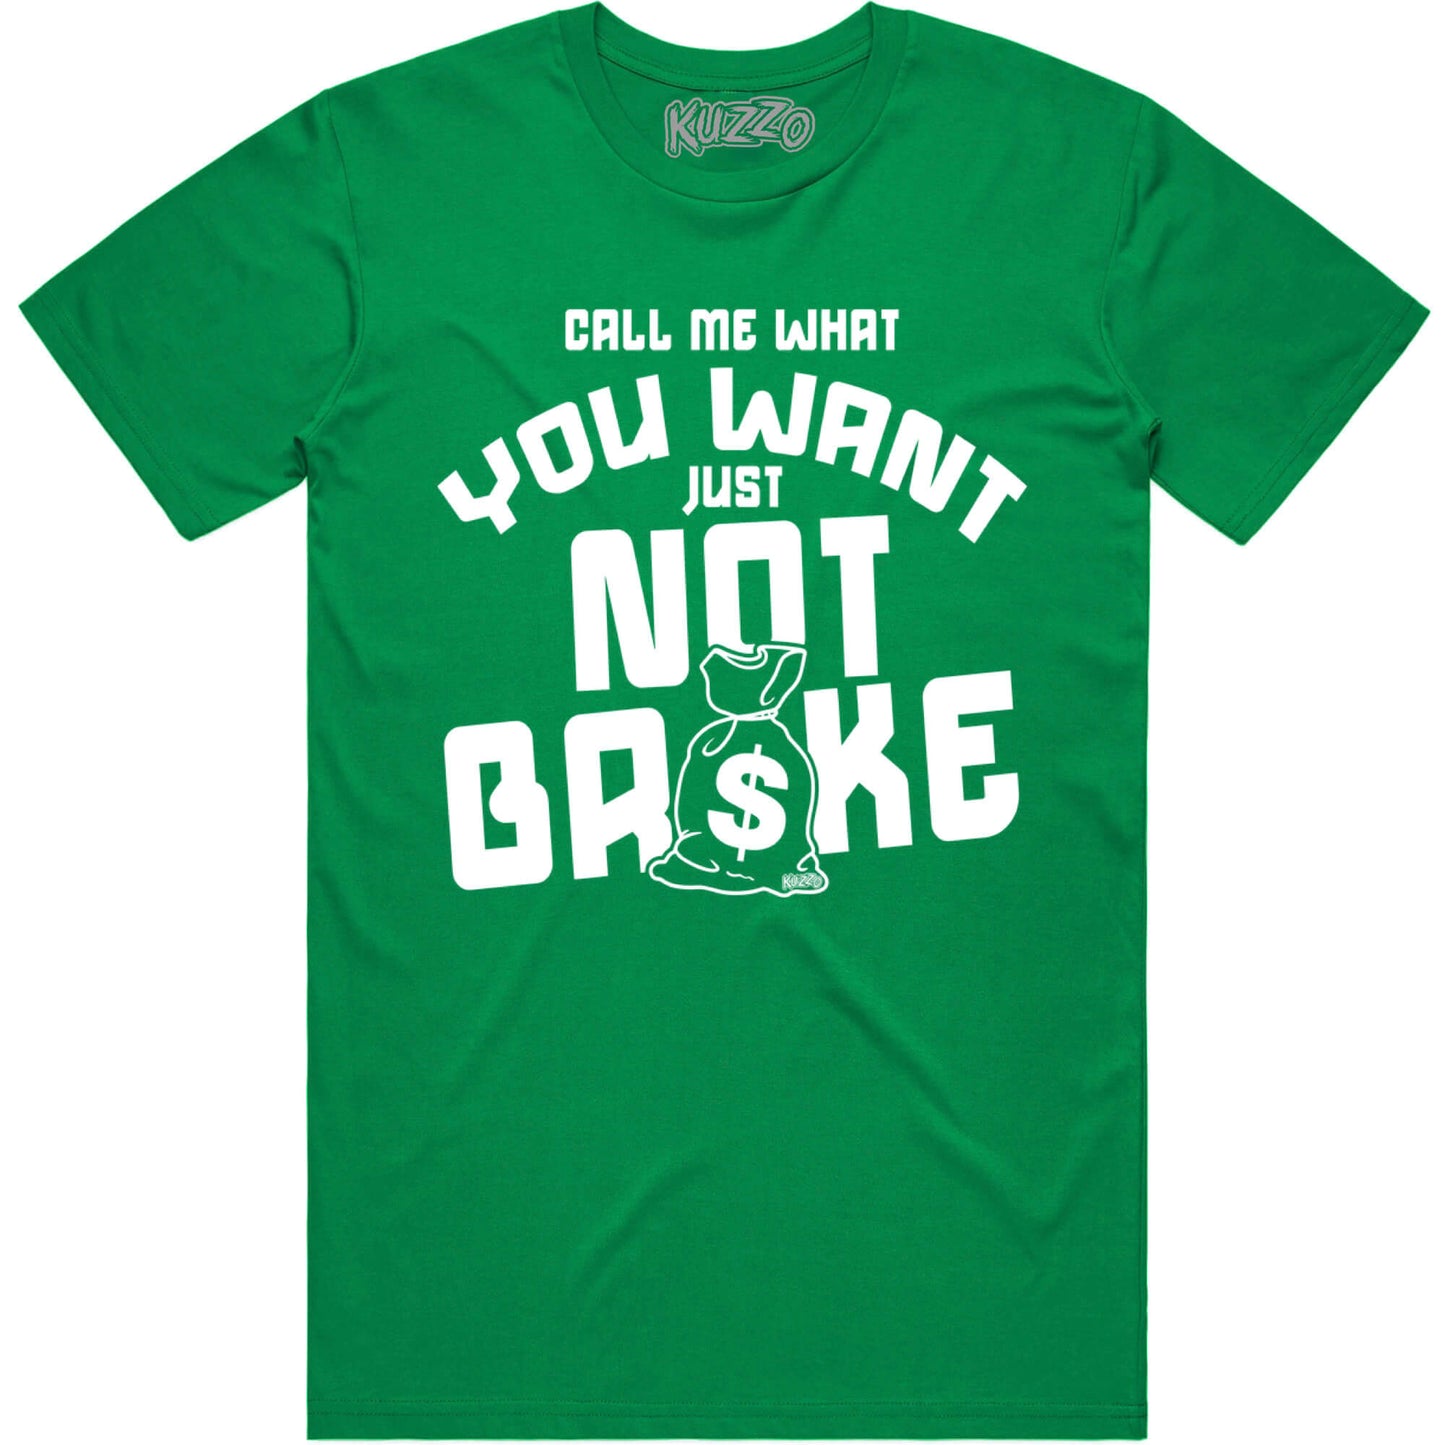 Penny 1 Stadium Green Shirt - Jordan Lucky Green Shirt - Not Broke